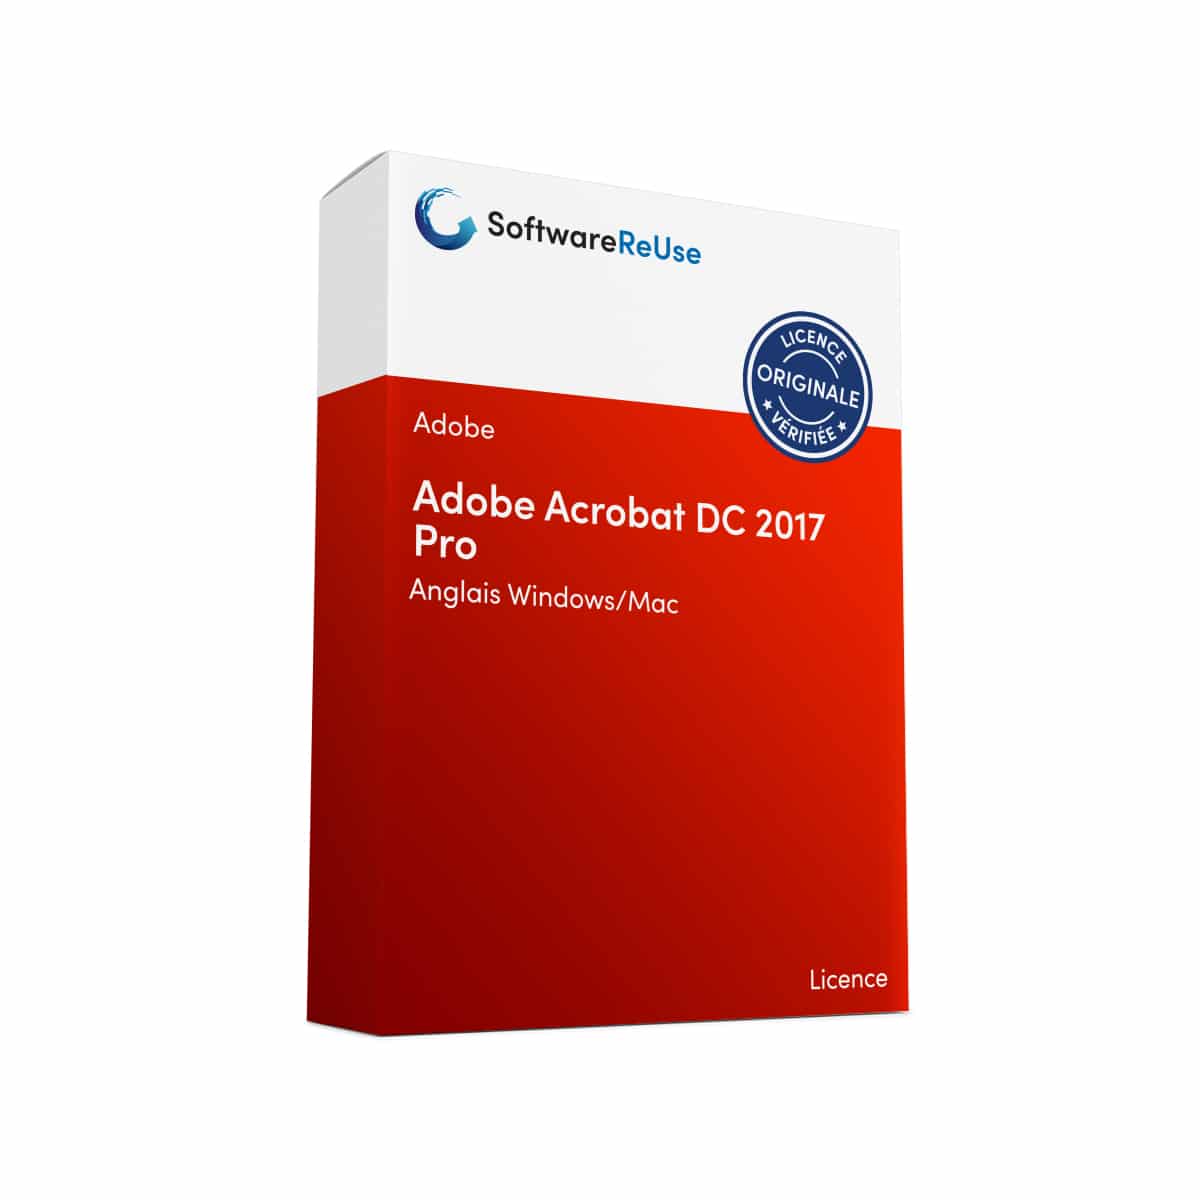 Adobe Acrobat DC 2017 Pro 4